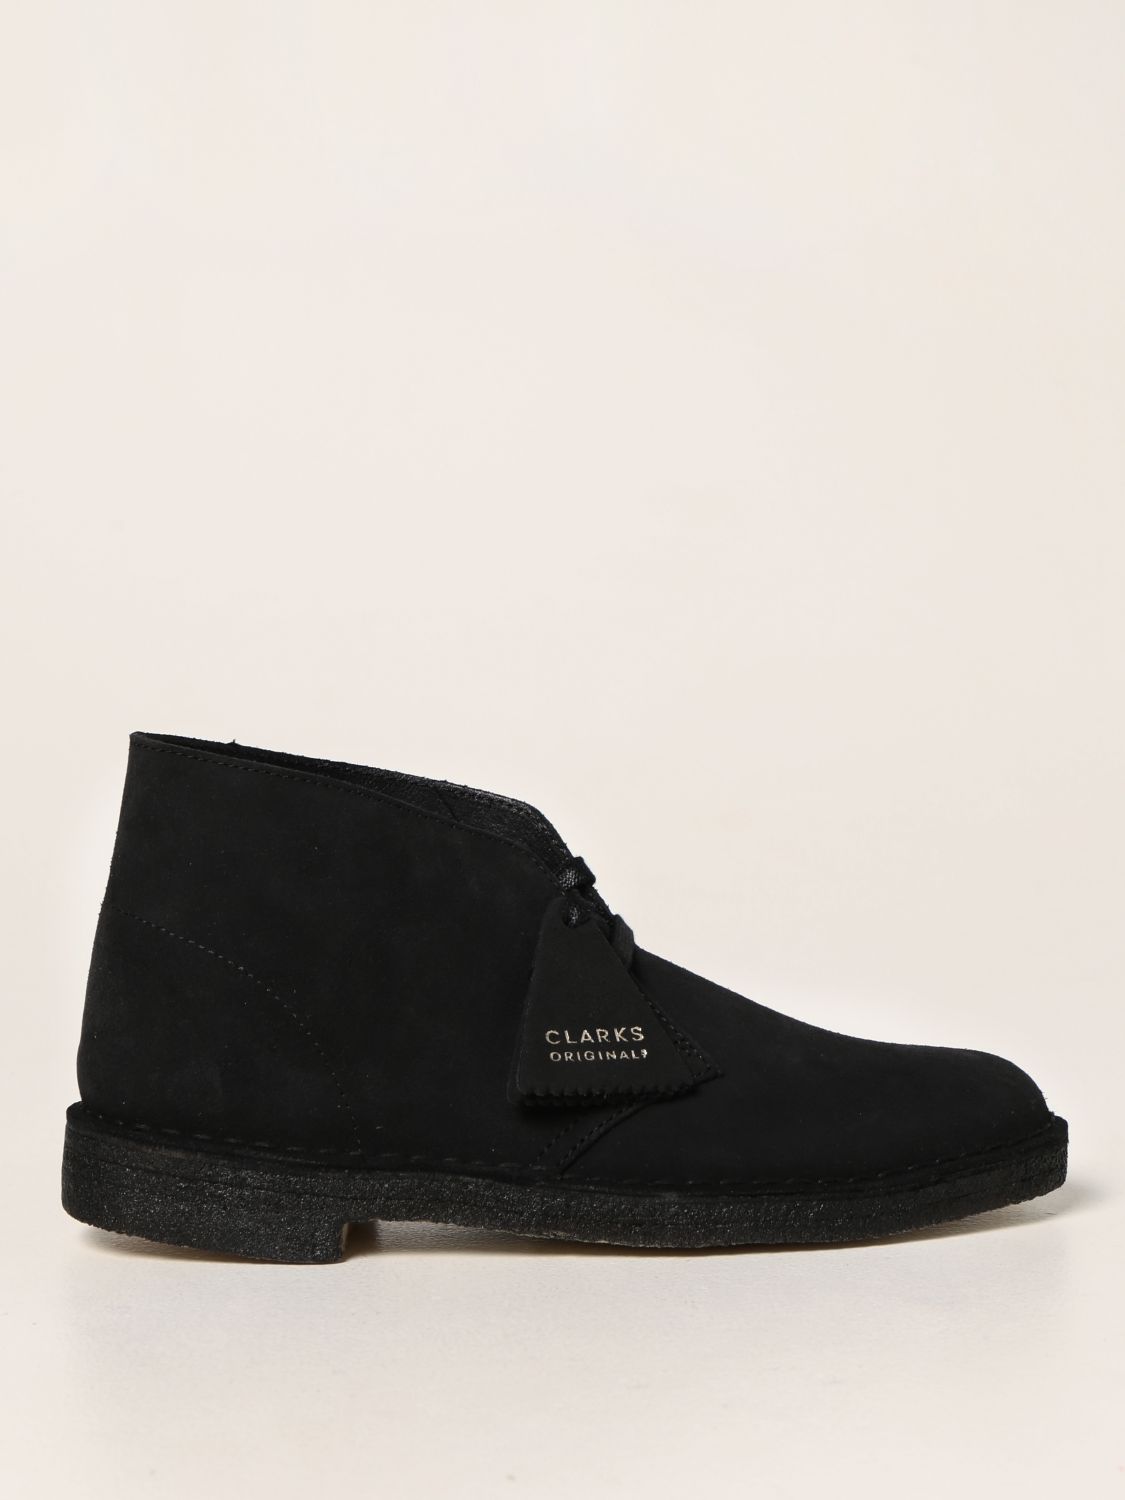 CLARKS ORIGINALS: Zapatos abotinados para hombre, Azul Oscuro  Zapatos  Abotinados Clarks Originals 174036 en línea en